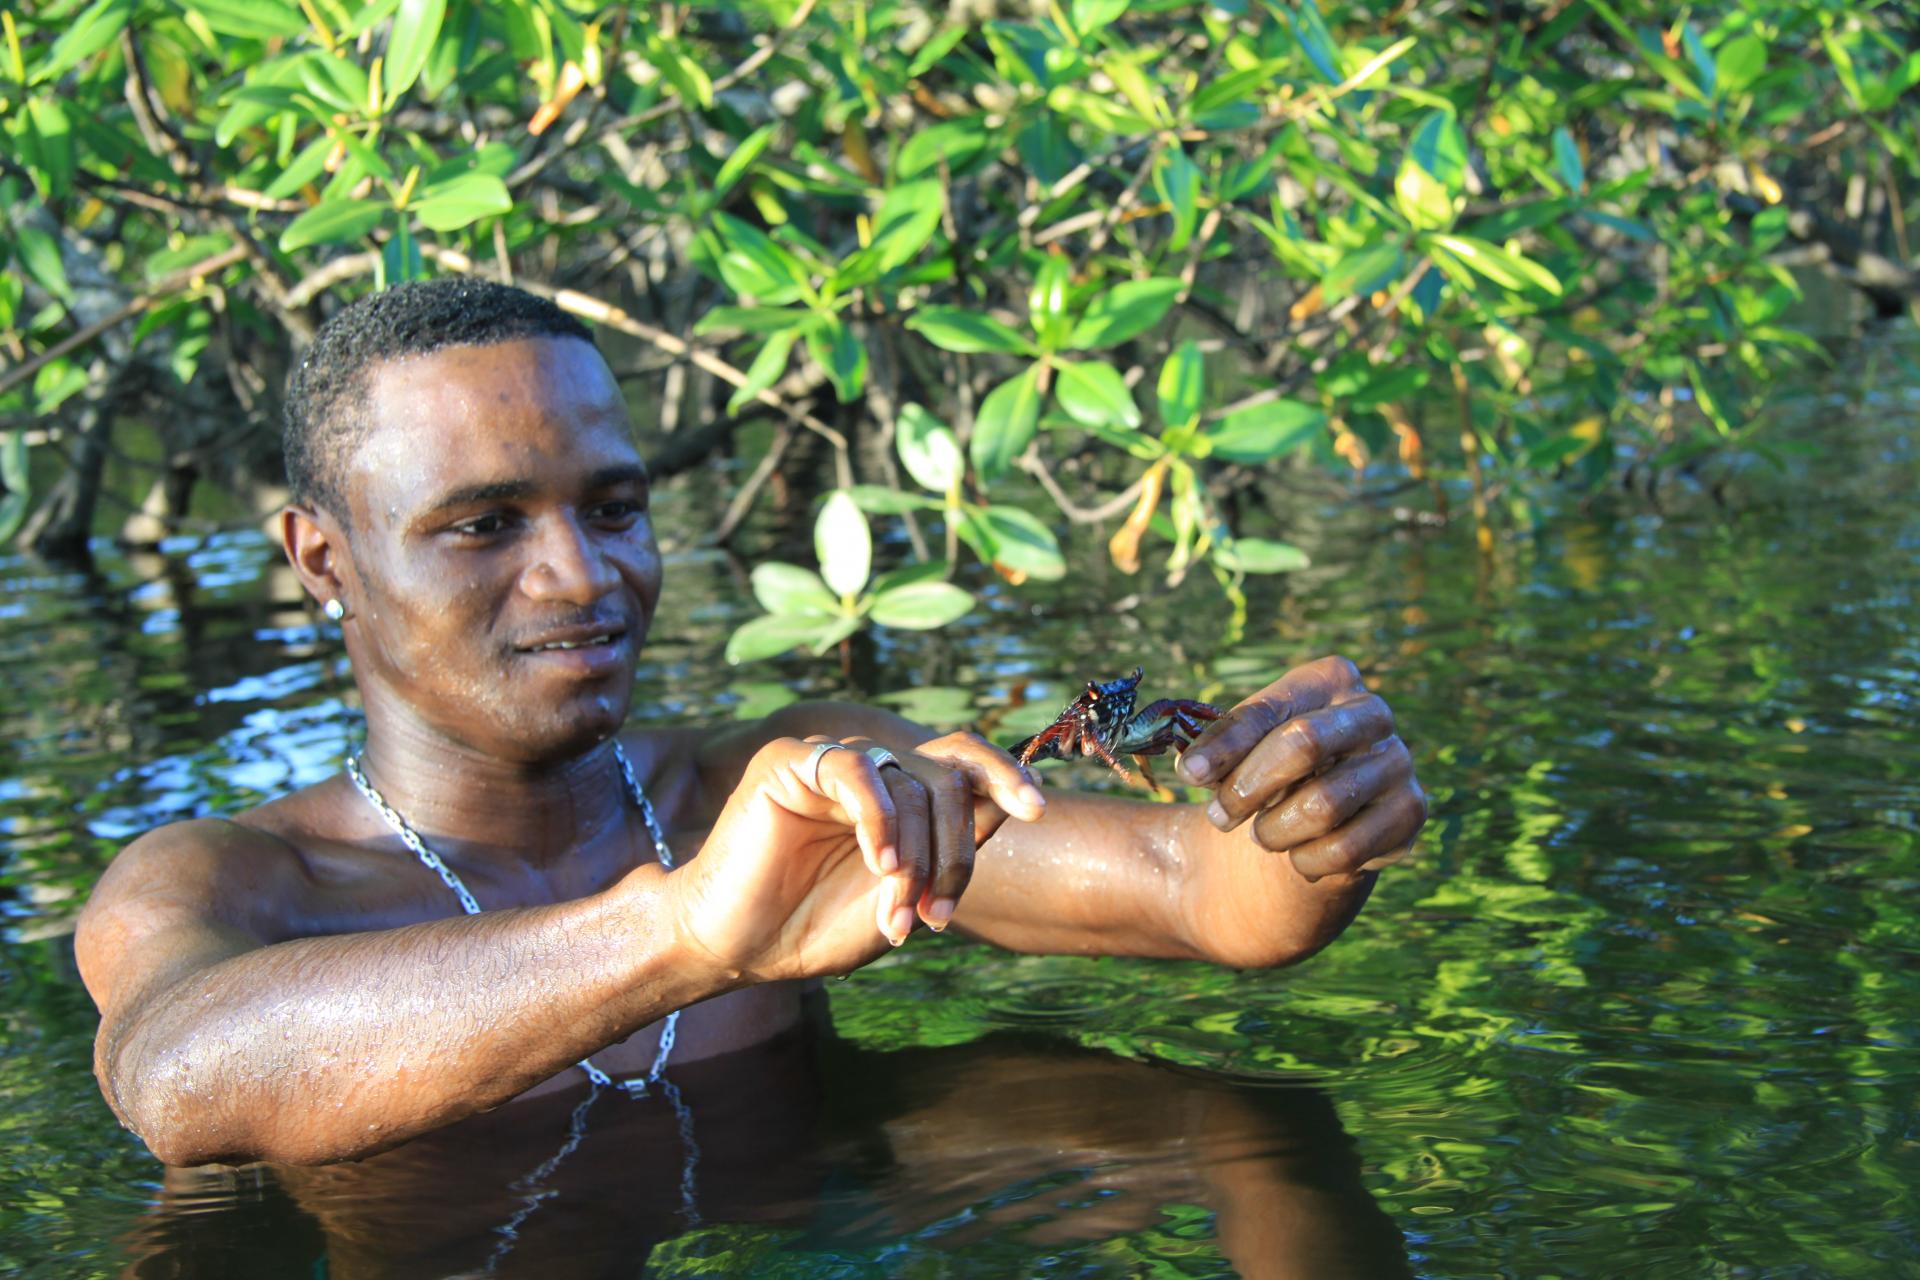 Tagestour Mangroventour im Einbaum mit Mittagessen (4h, privat): Einheimischer zeigt gefangenen Krebs